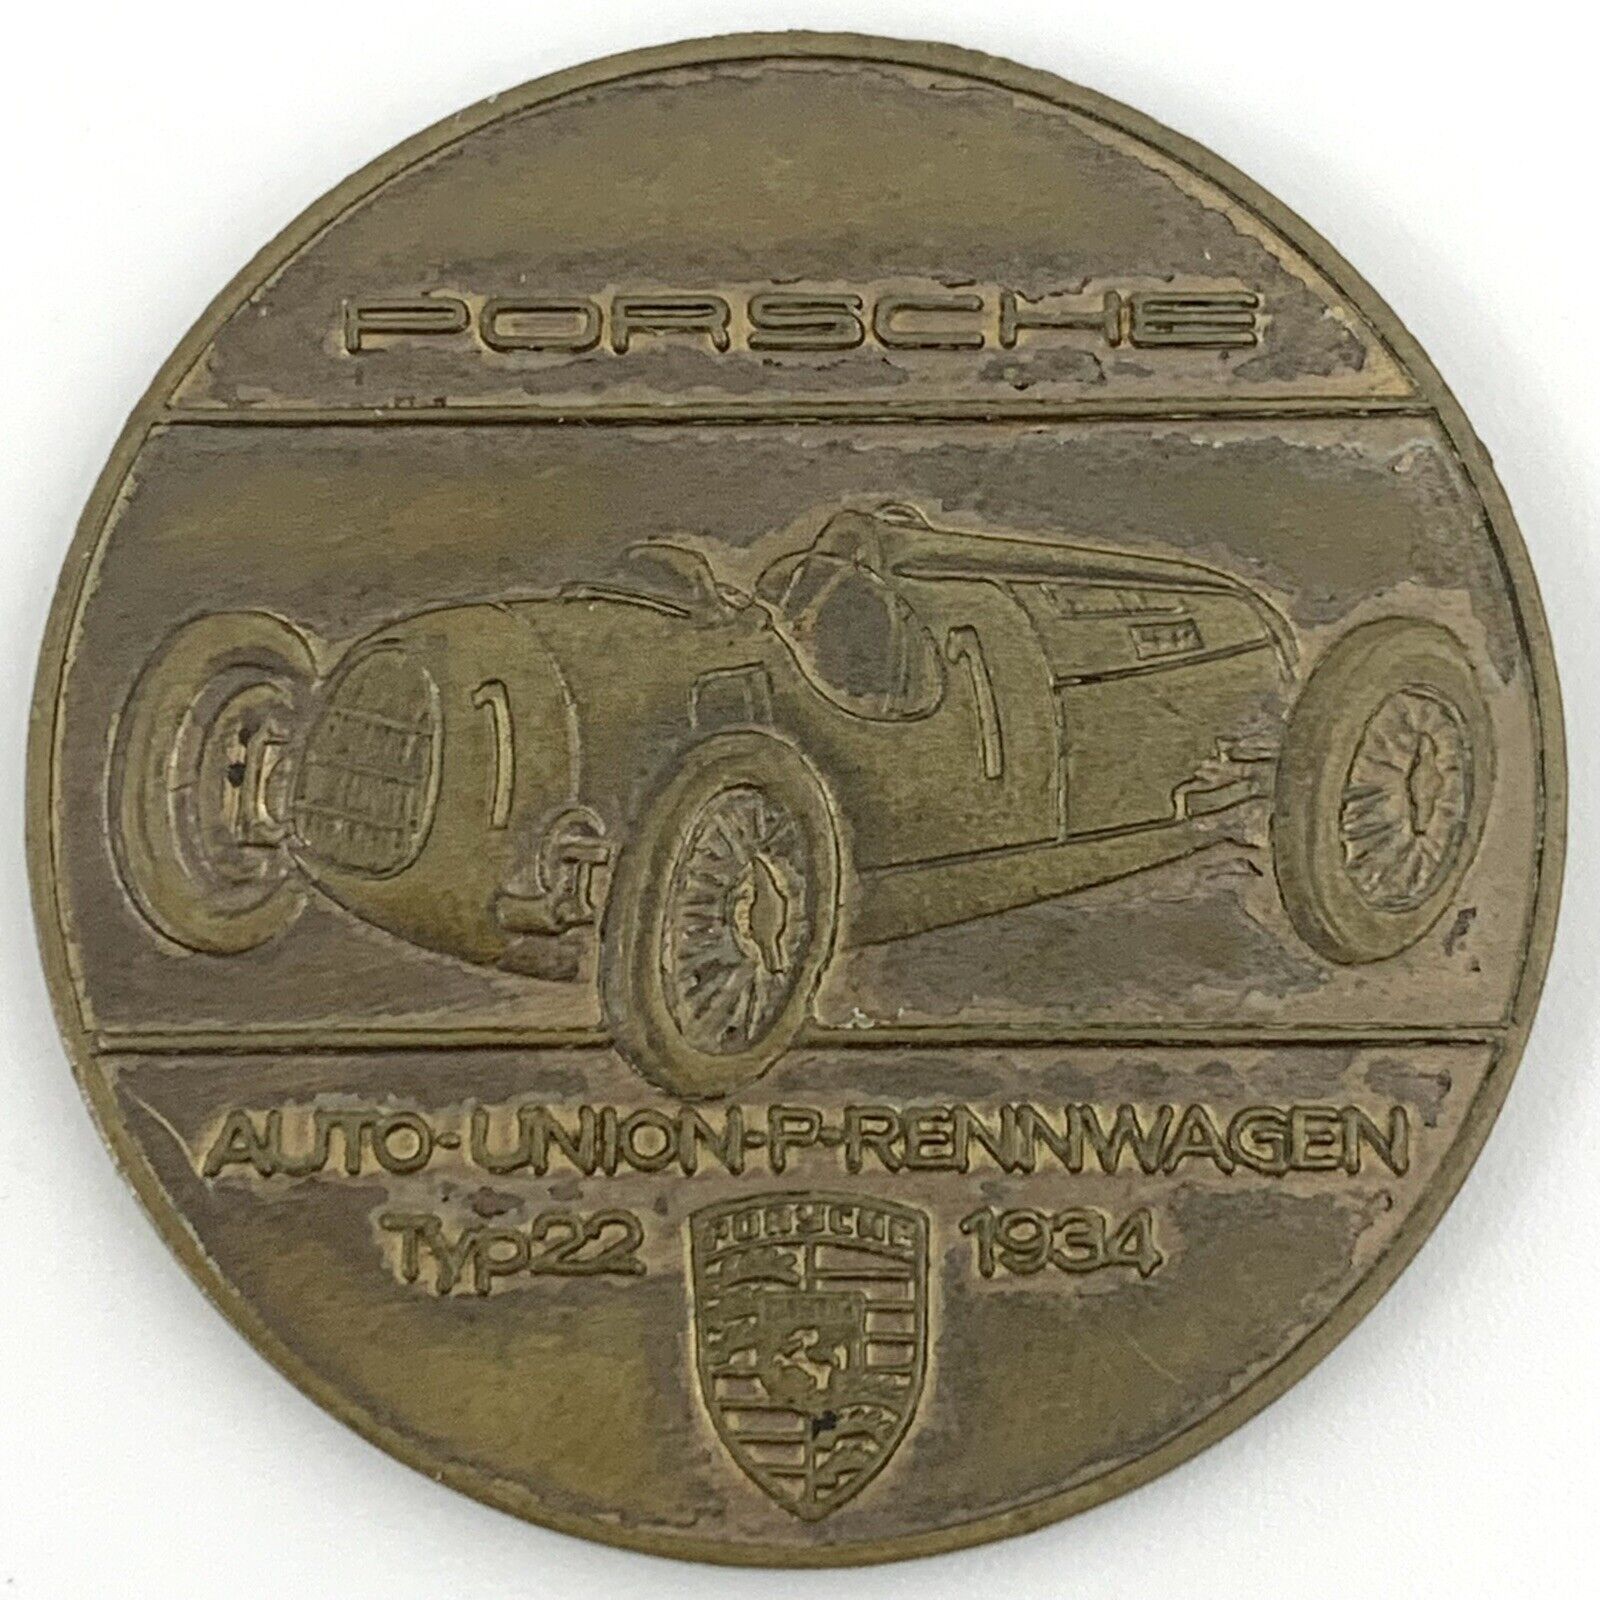 1970 Porsche Auto Union Typ22 Christophorus Calendar Coin